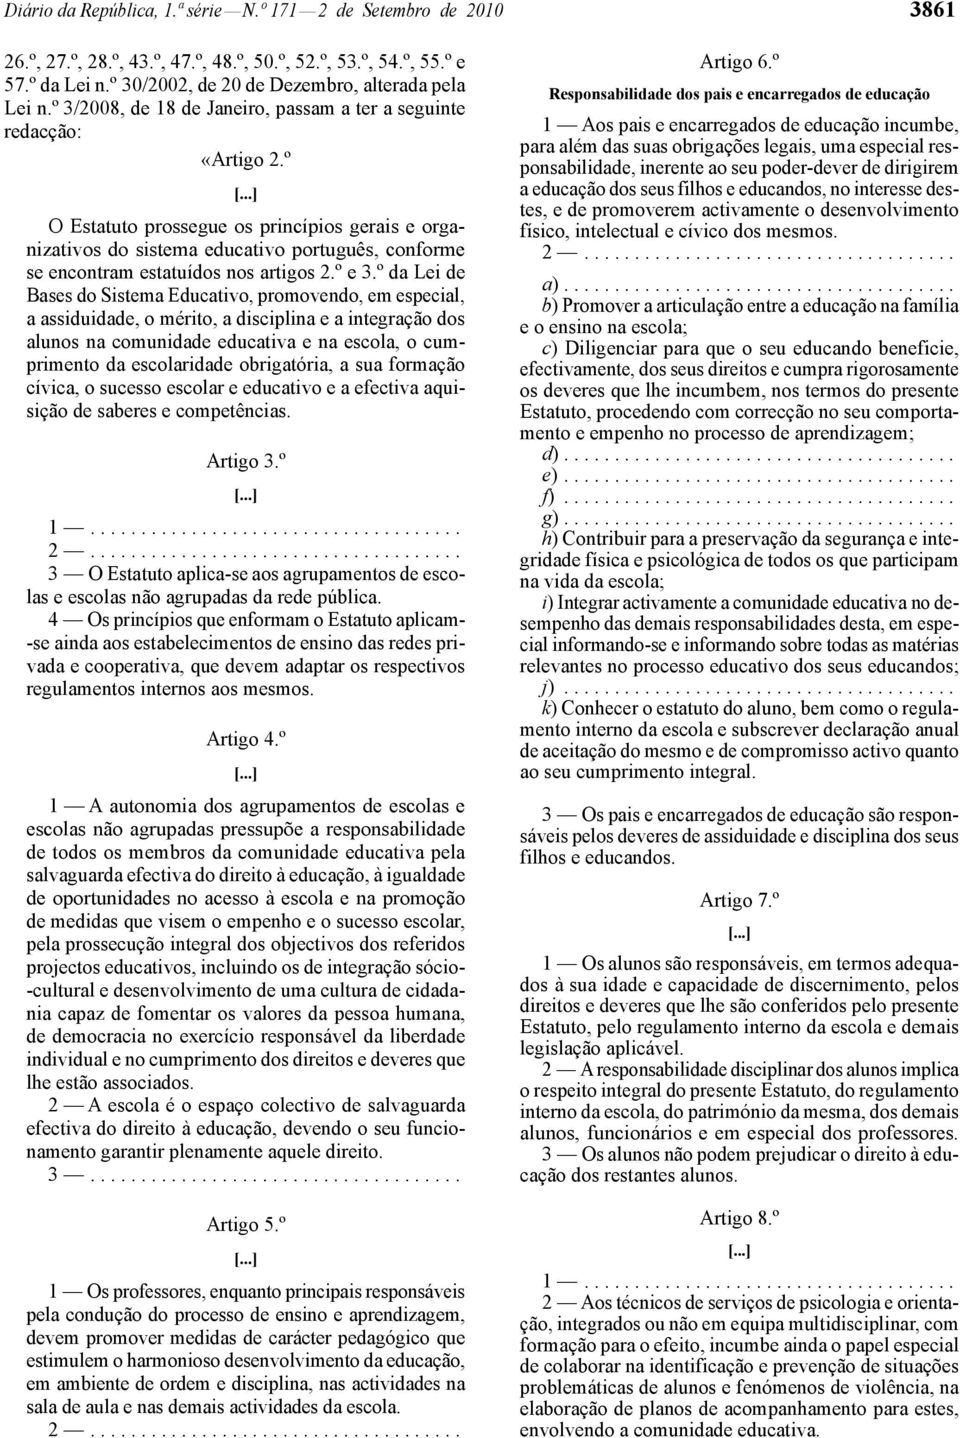 º O Estatuto prossegue os princípios gerais e organizativos do sistema educativo português, conforme se encontram estatuídos nos artigos 2.º e 3.